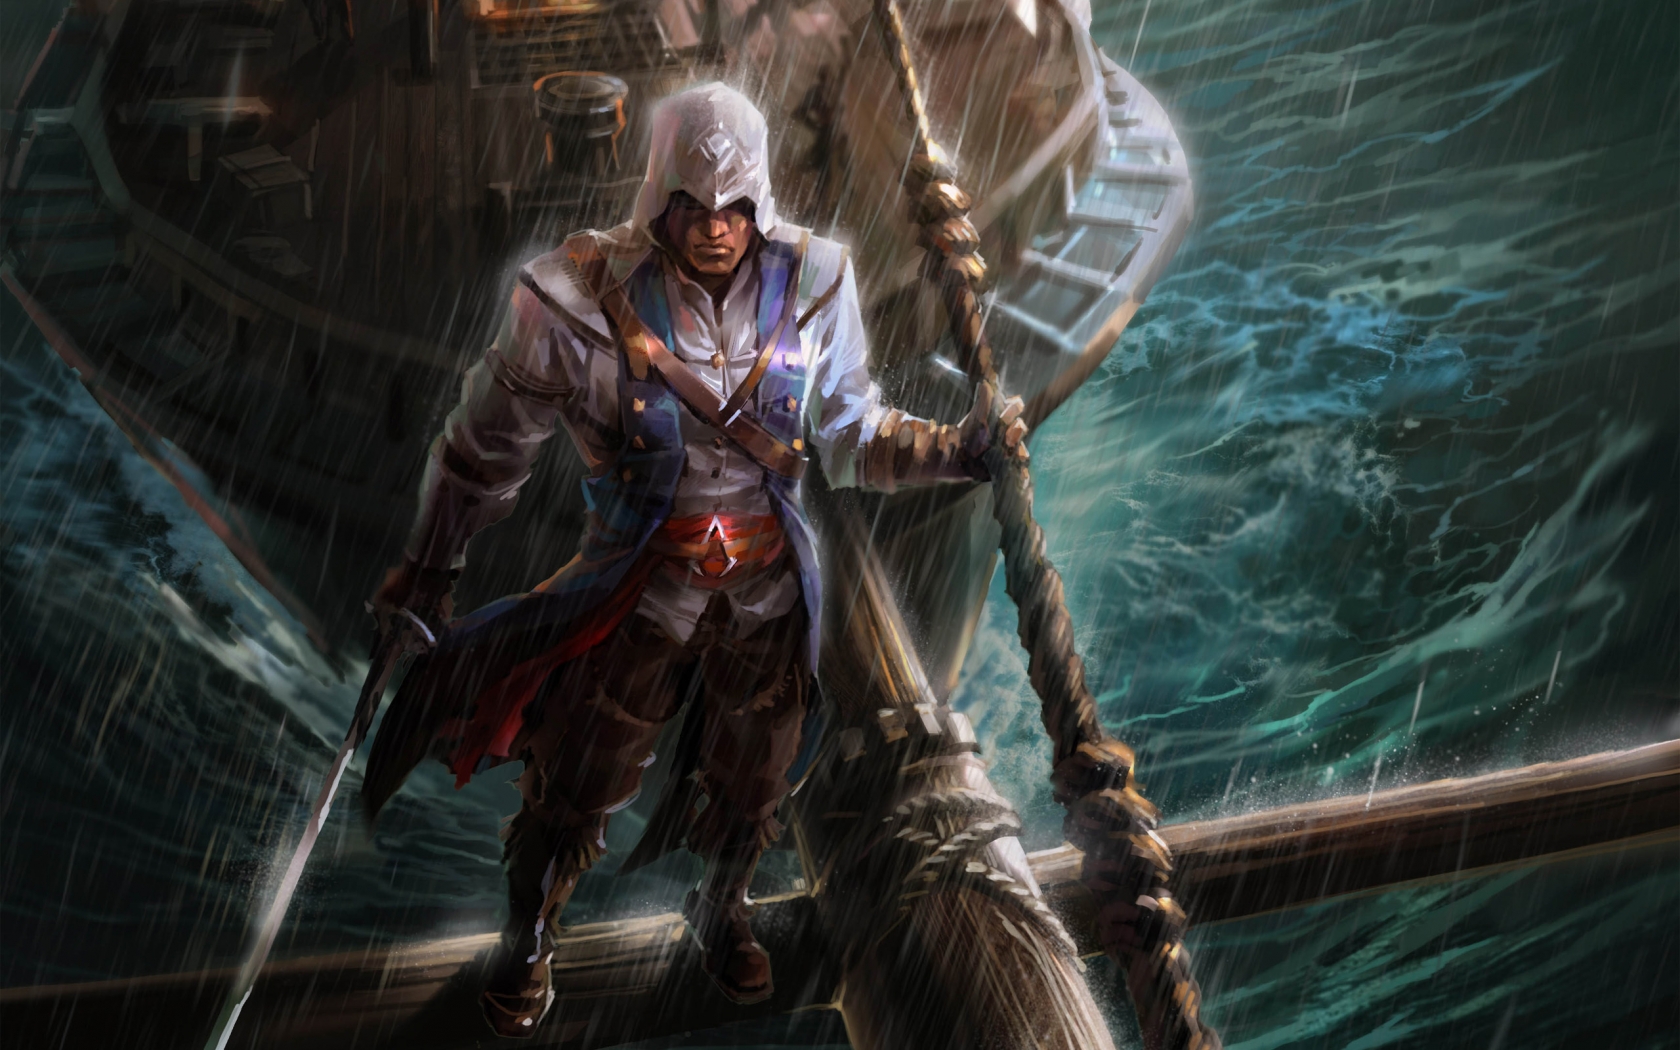 Assassins Creed Fan Art for 1680 x 1050 widescreen resolution